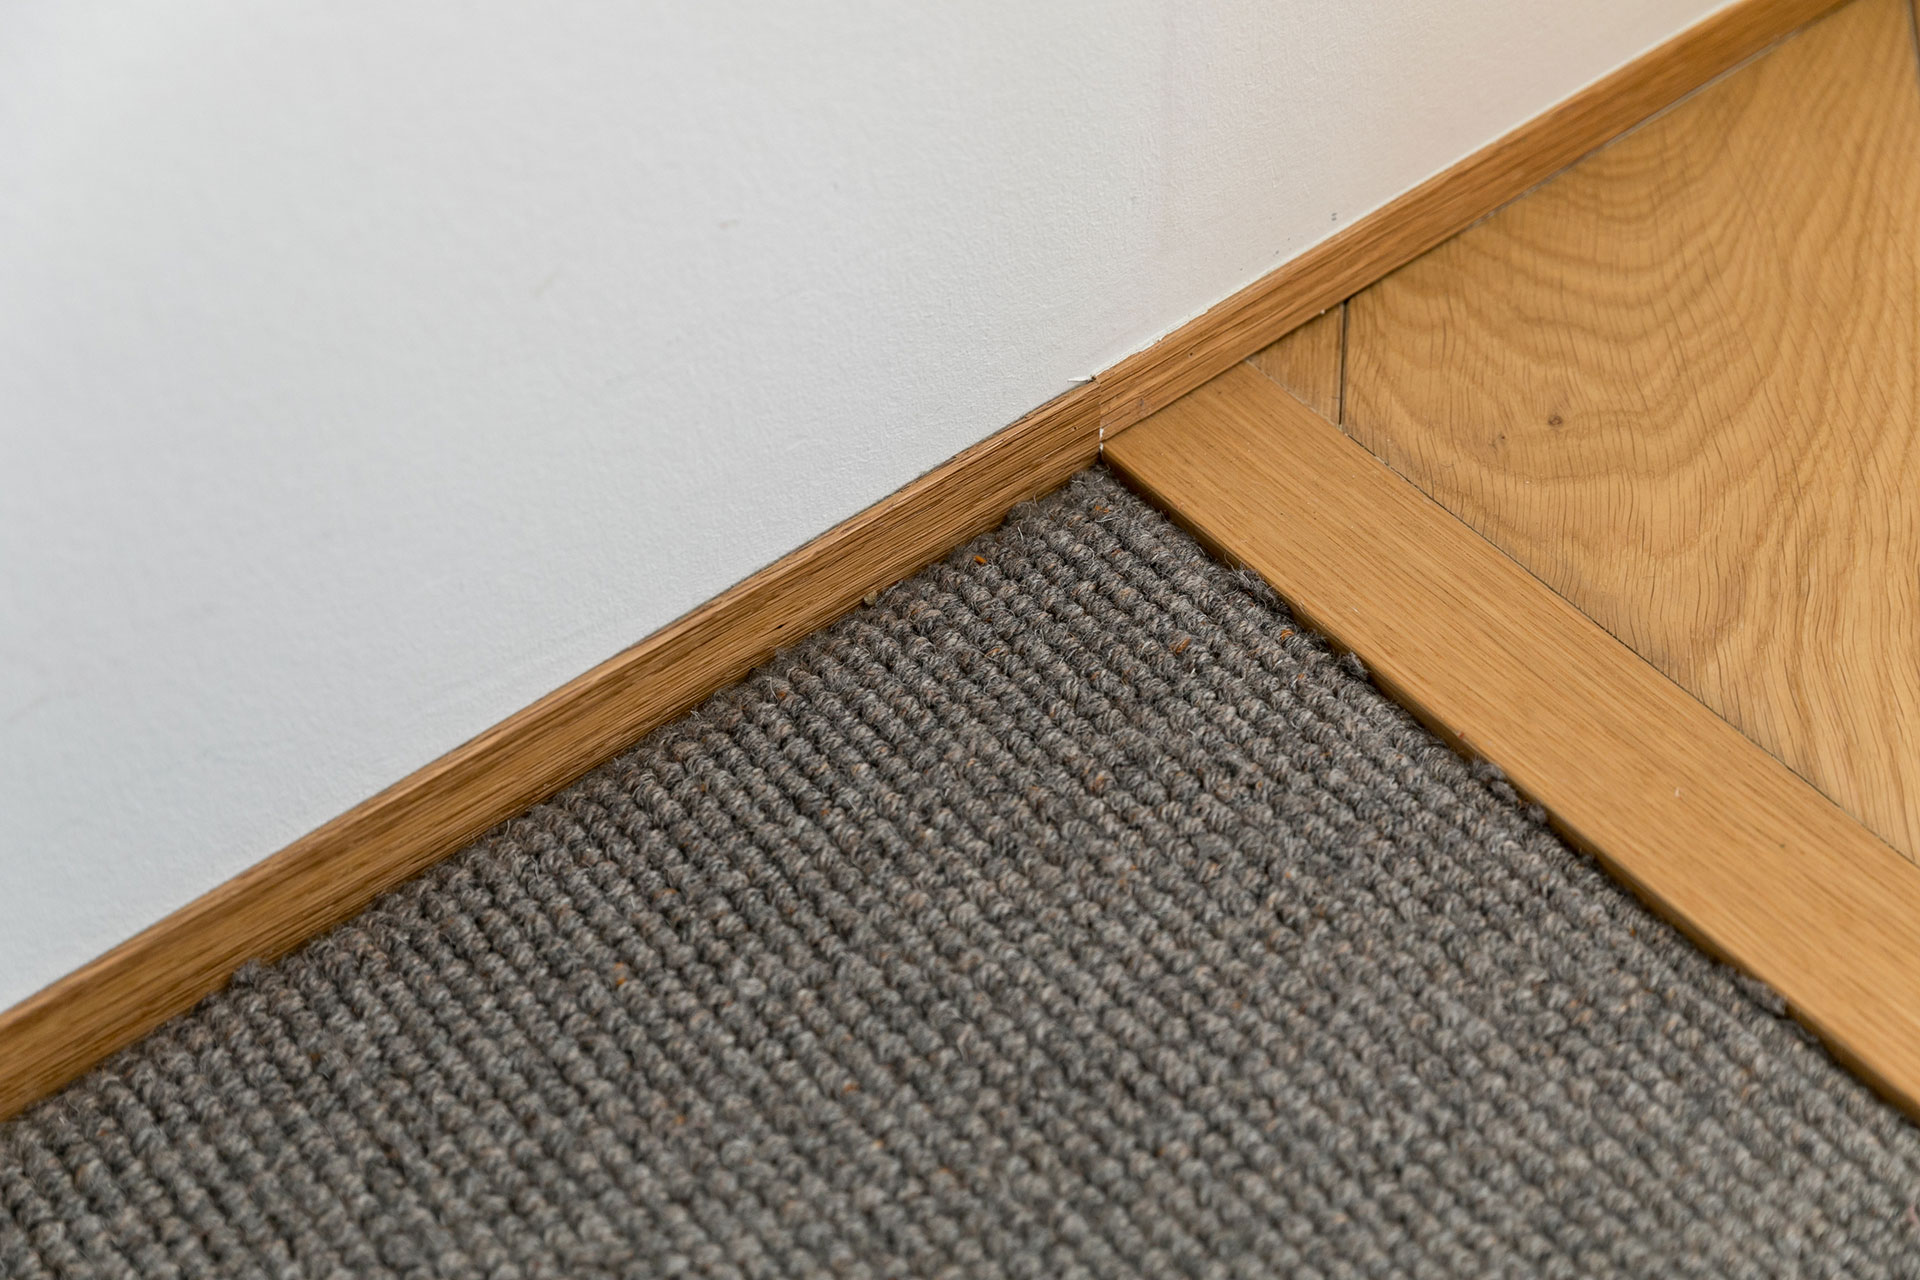 巾木は薄いウッドのものを選択。床材は柔らかなカーペットとフローリングを組み合わせている。